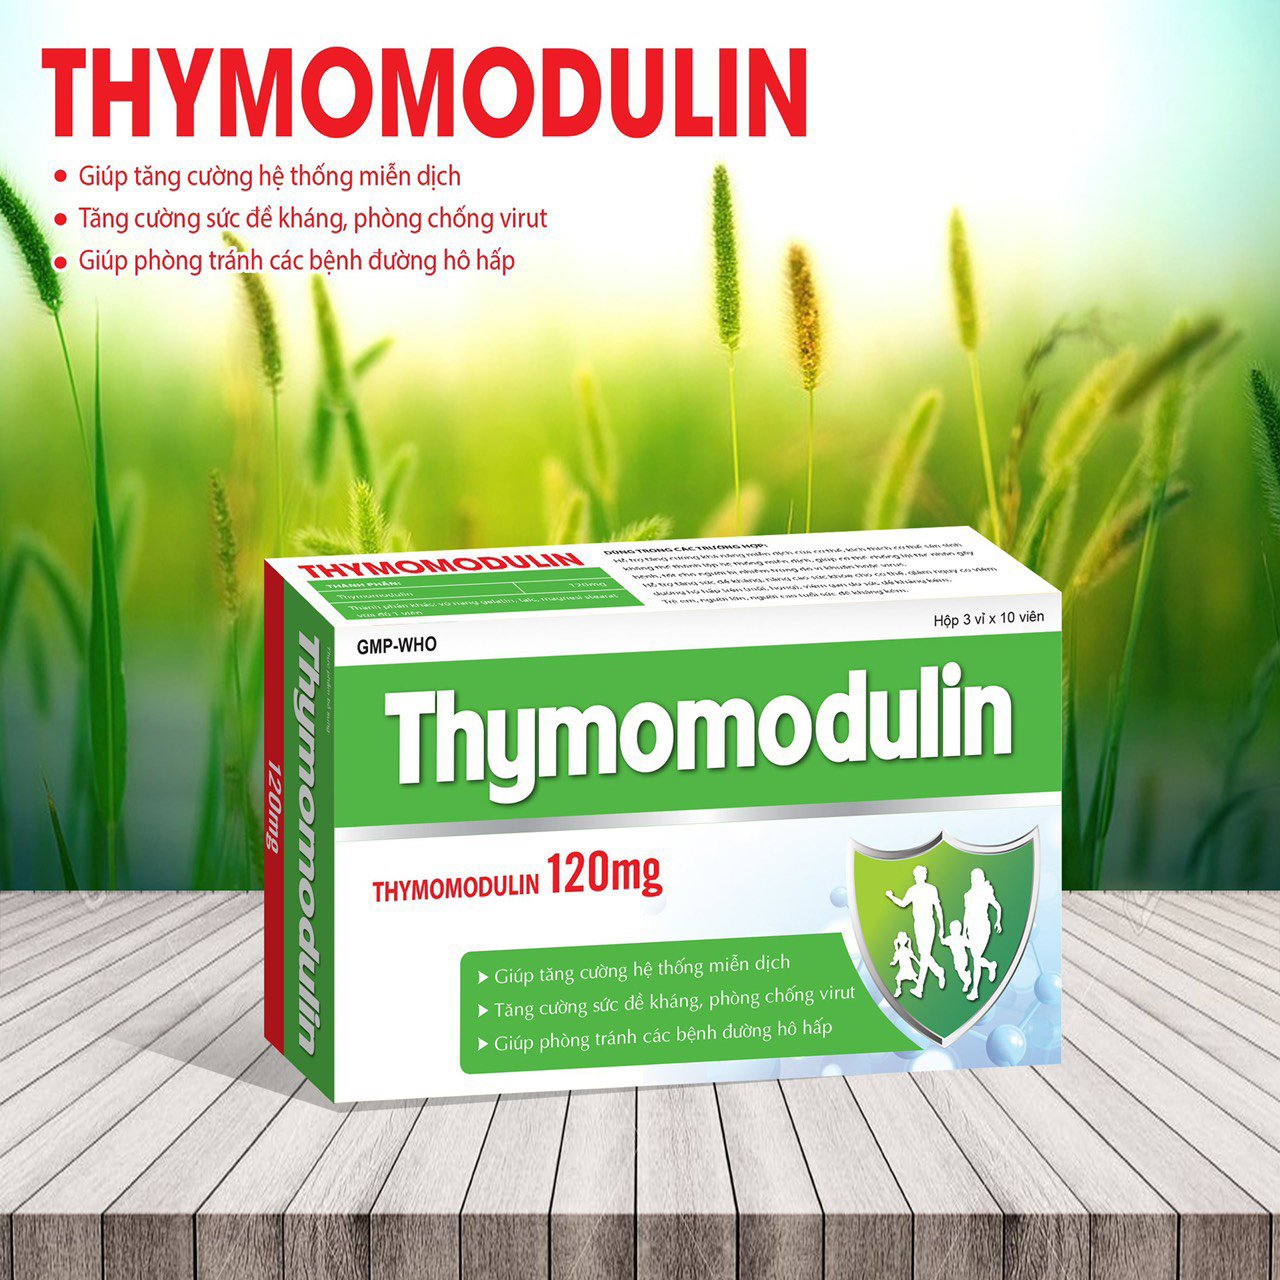 Viên uống Thymomodulin 120mg tăng cường sức đề kháng, kháng khẩn, ngừa virus, phòng tránh bệnh đường hô hấp - Hộp 30 viên